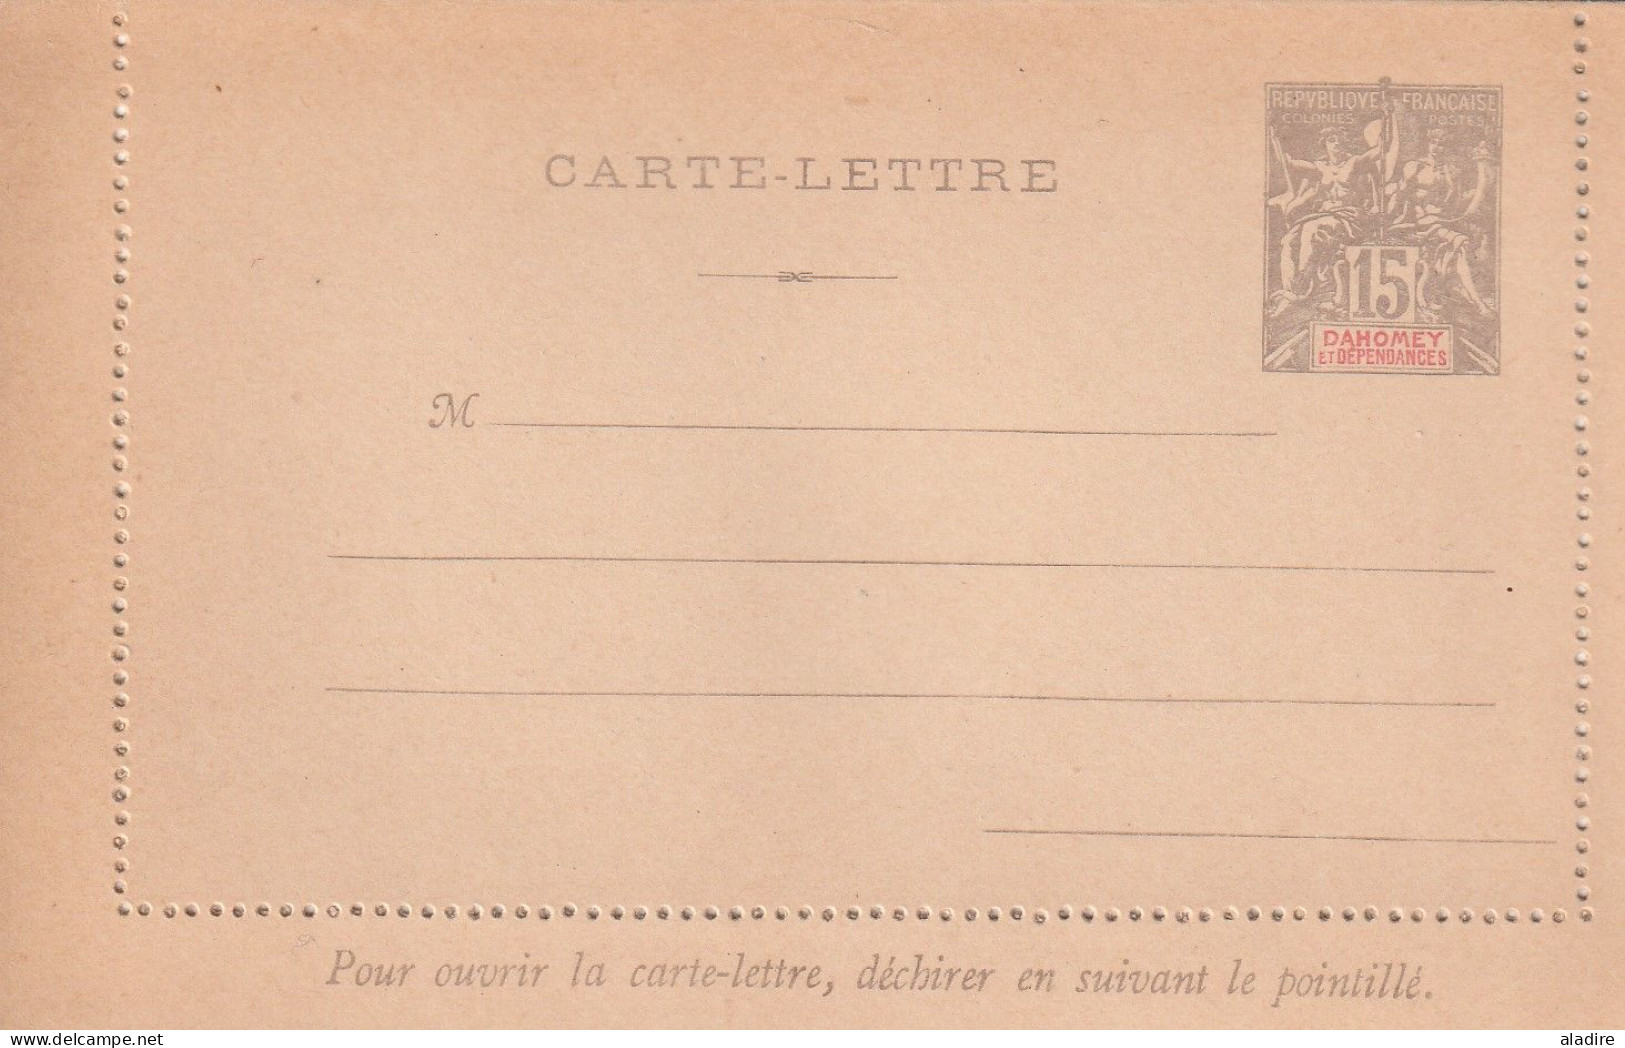 1899 - 1937 - DAHOMEY / BENIN - lot de 8 cartes, enveloppes (Aéromaritime) et entiers